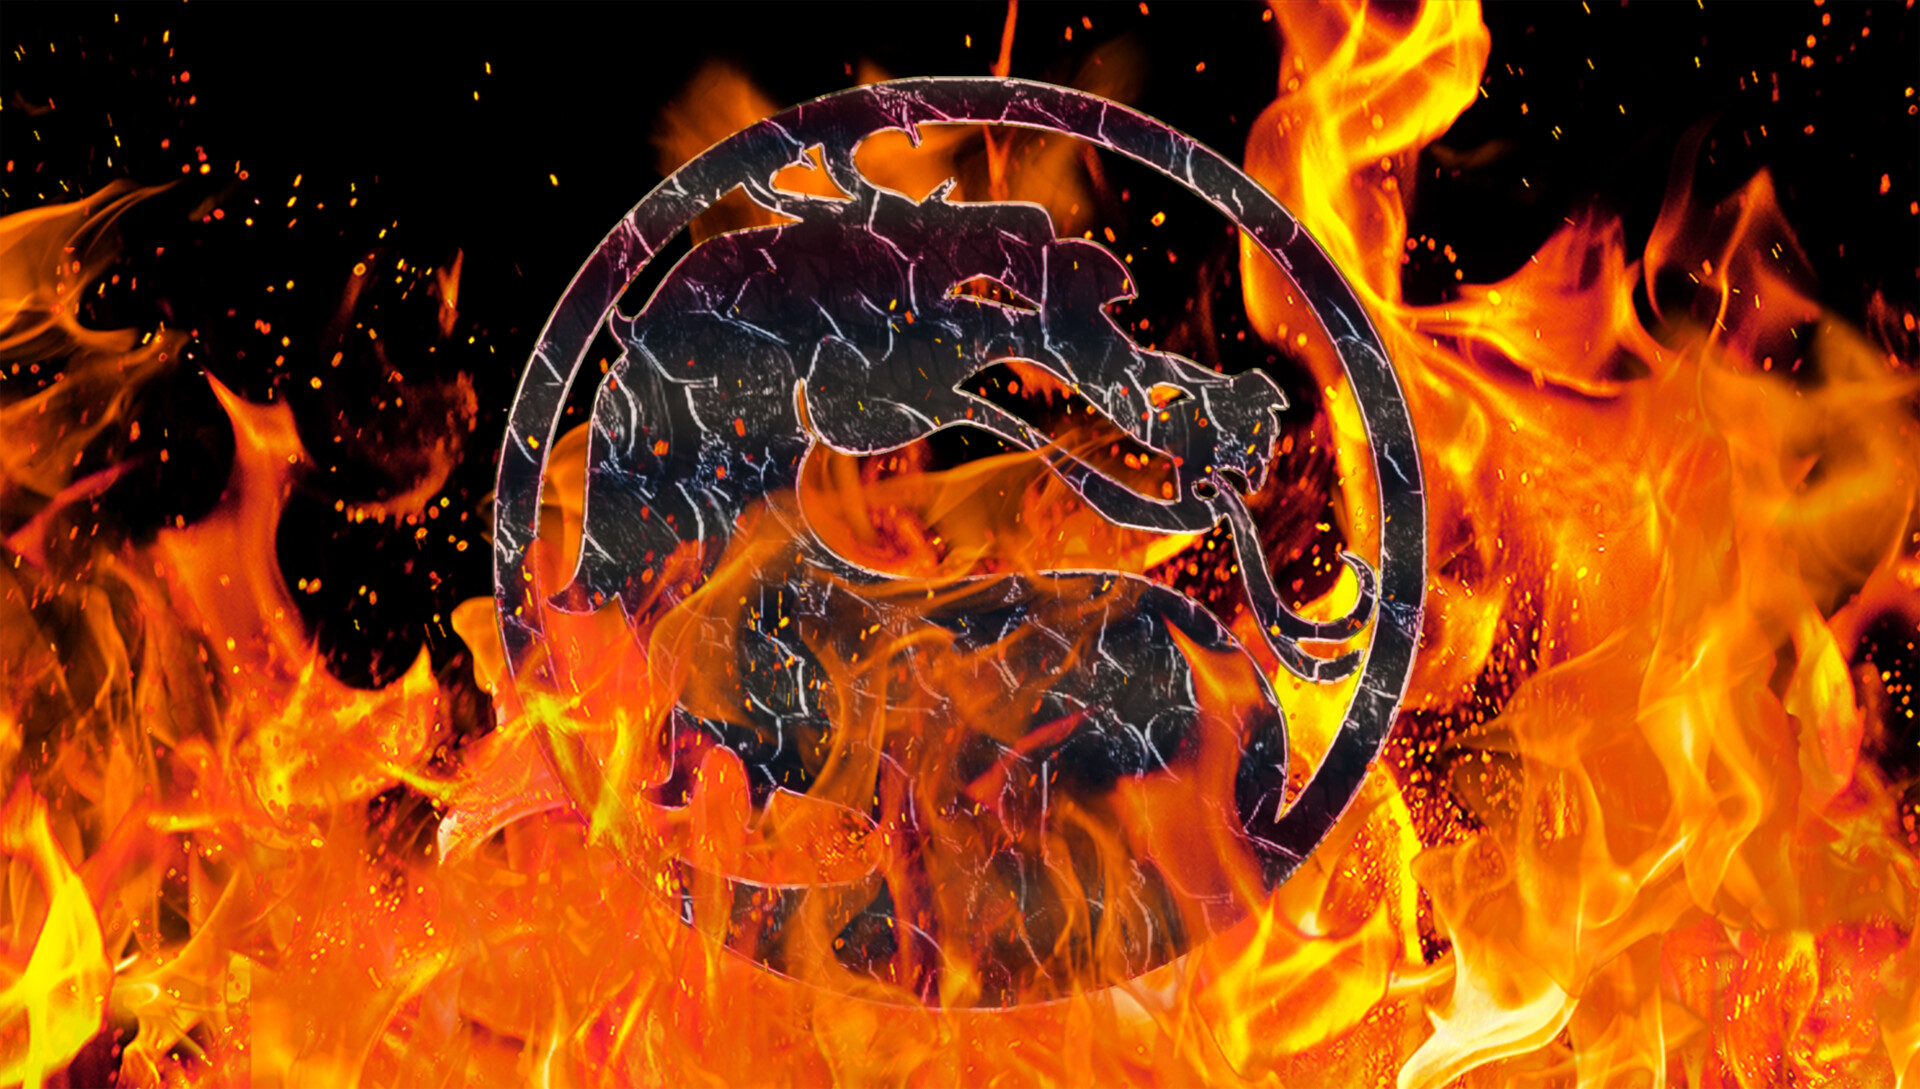 ArtStation - DenisNinja Mortal Kombat Ultimate Dragon Symbol 4K Wallpaper